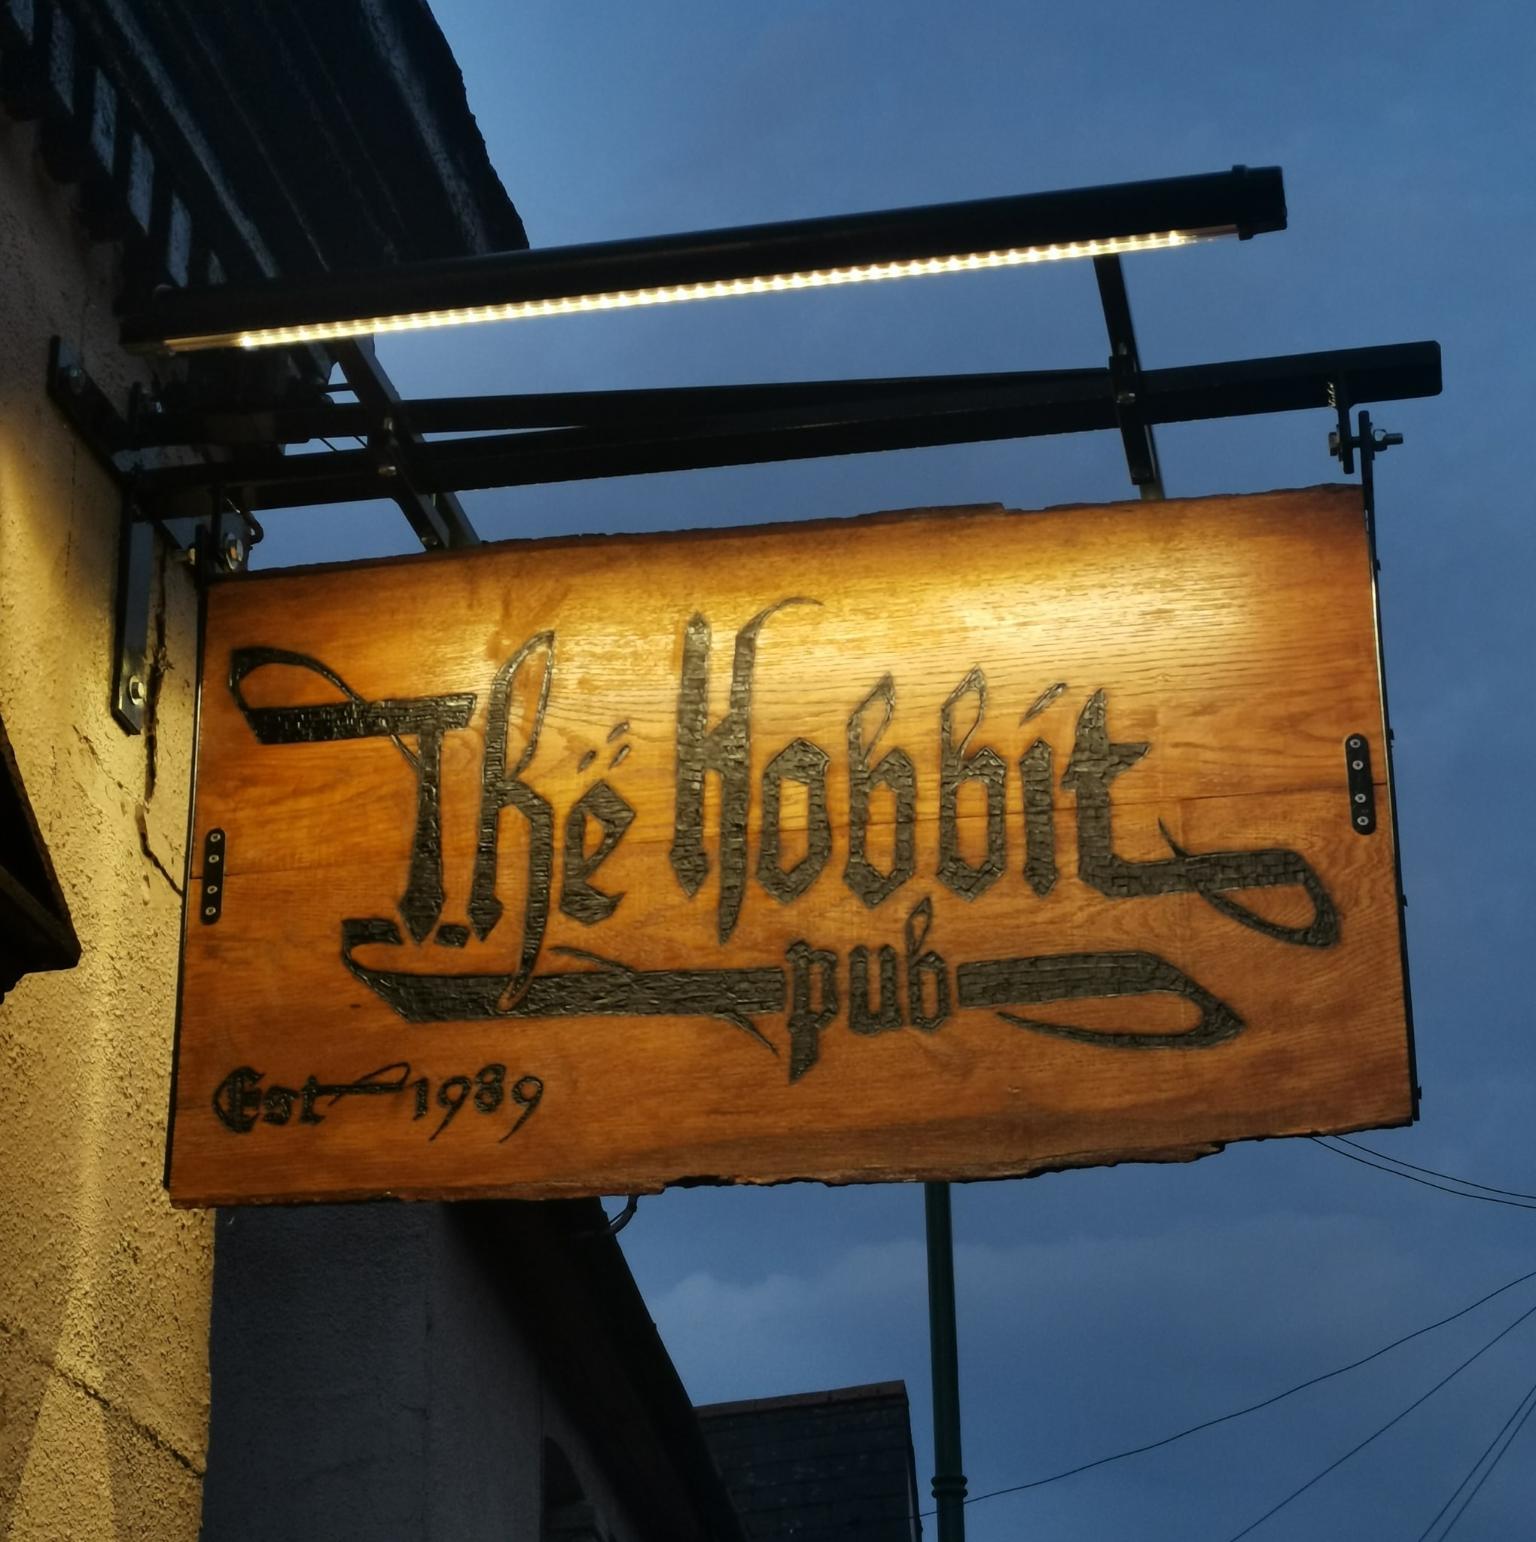 The Hobbit Pub